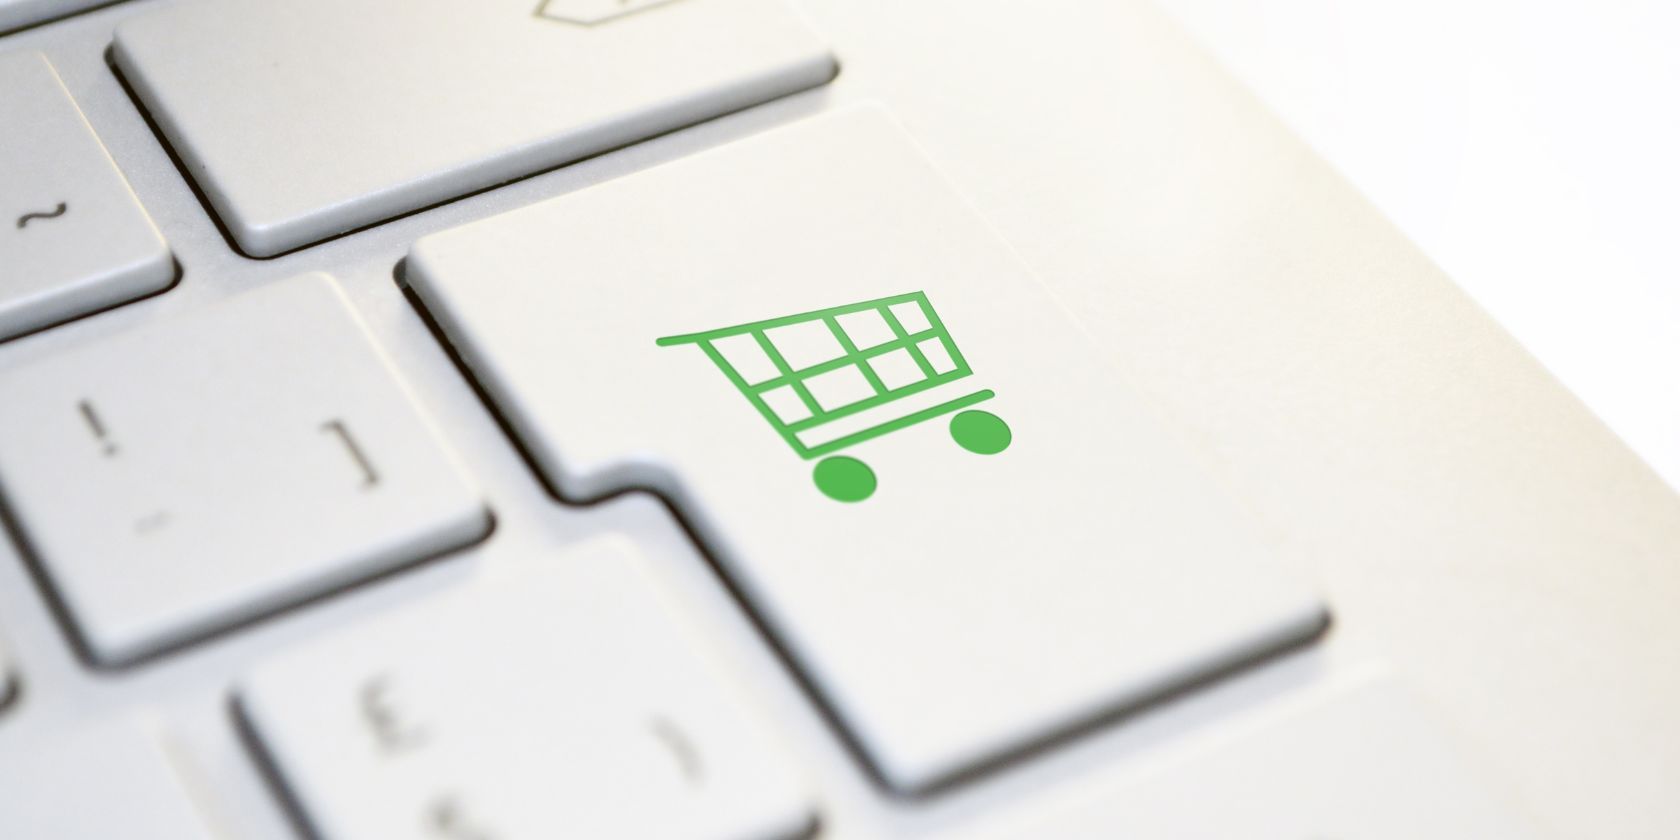 shopping cart logo on keyboard enter key